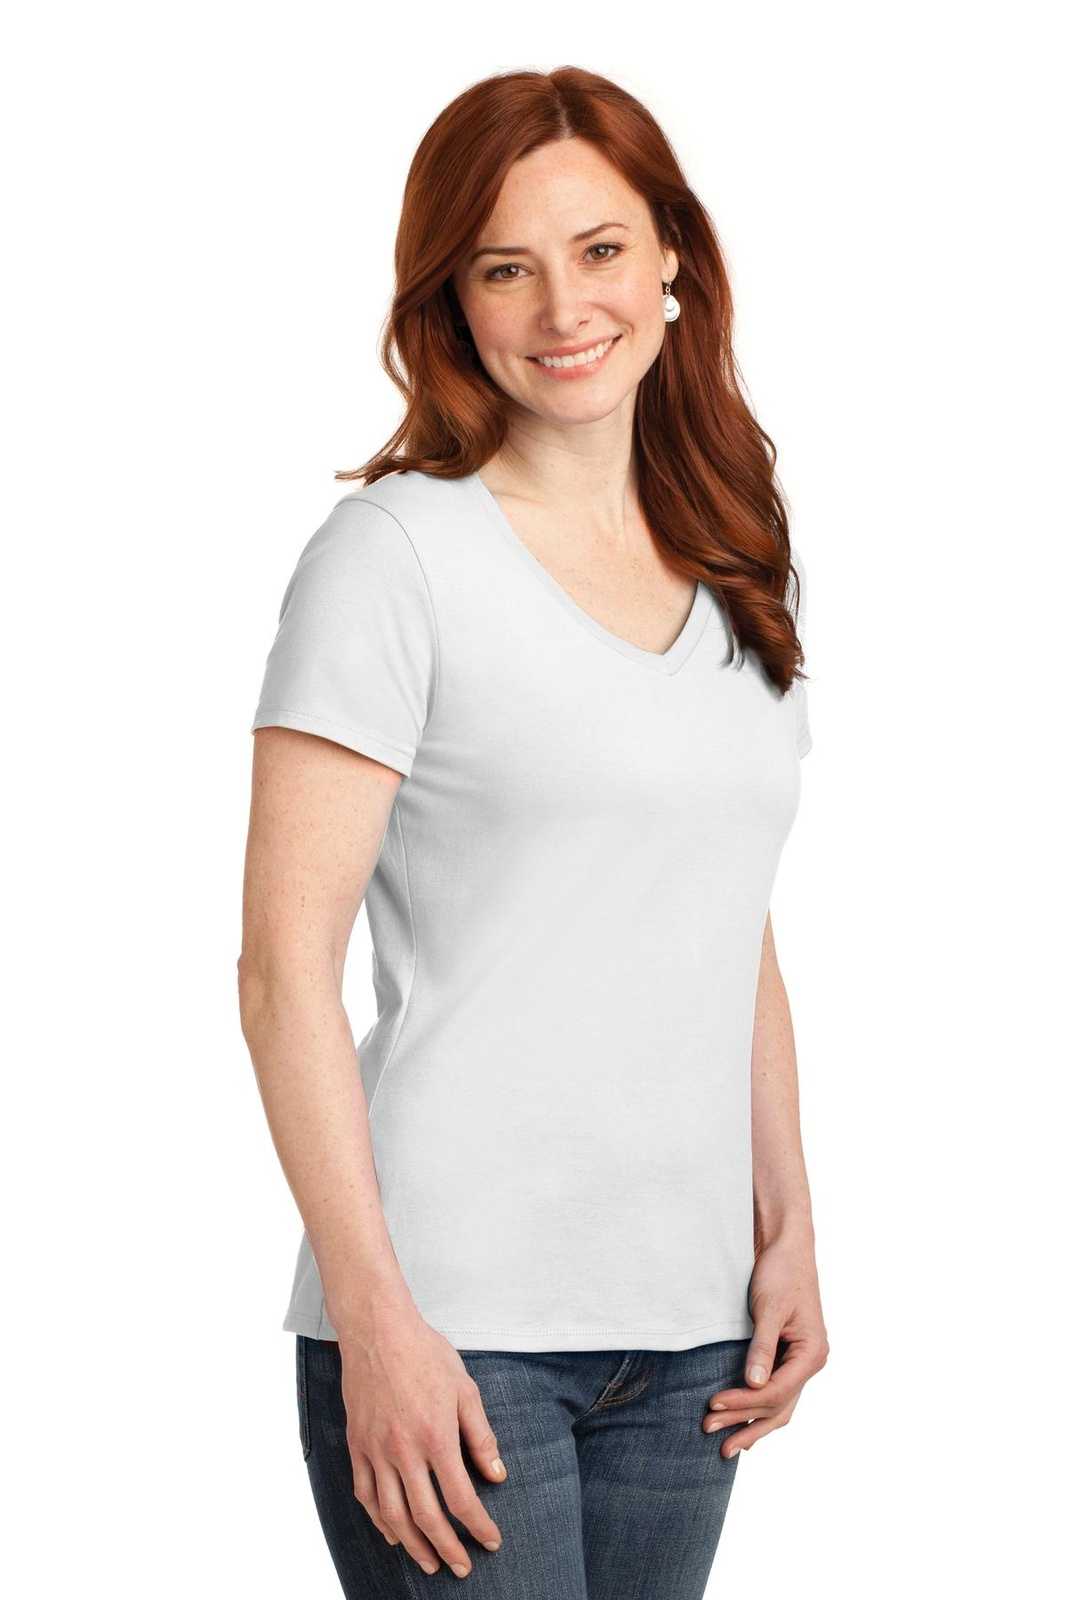 Hanes S04V Ladies Nano-T Cotton V-Neck T-Shirt - White - HIT a Double